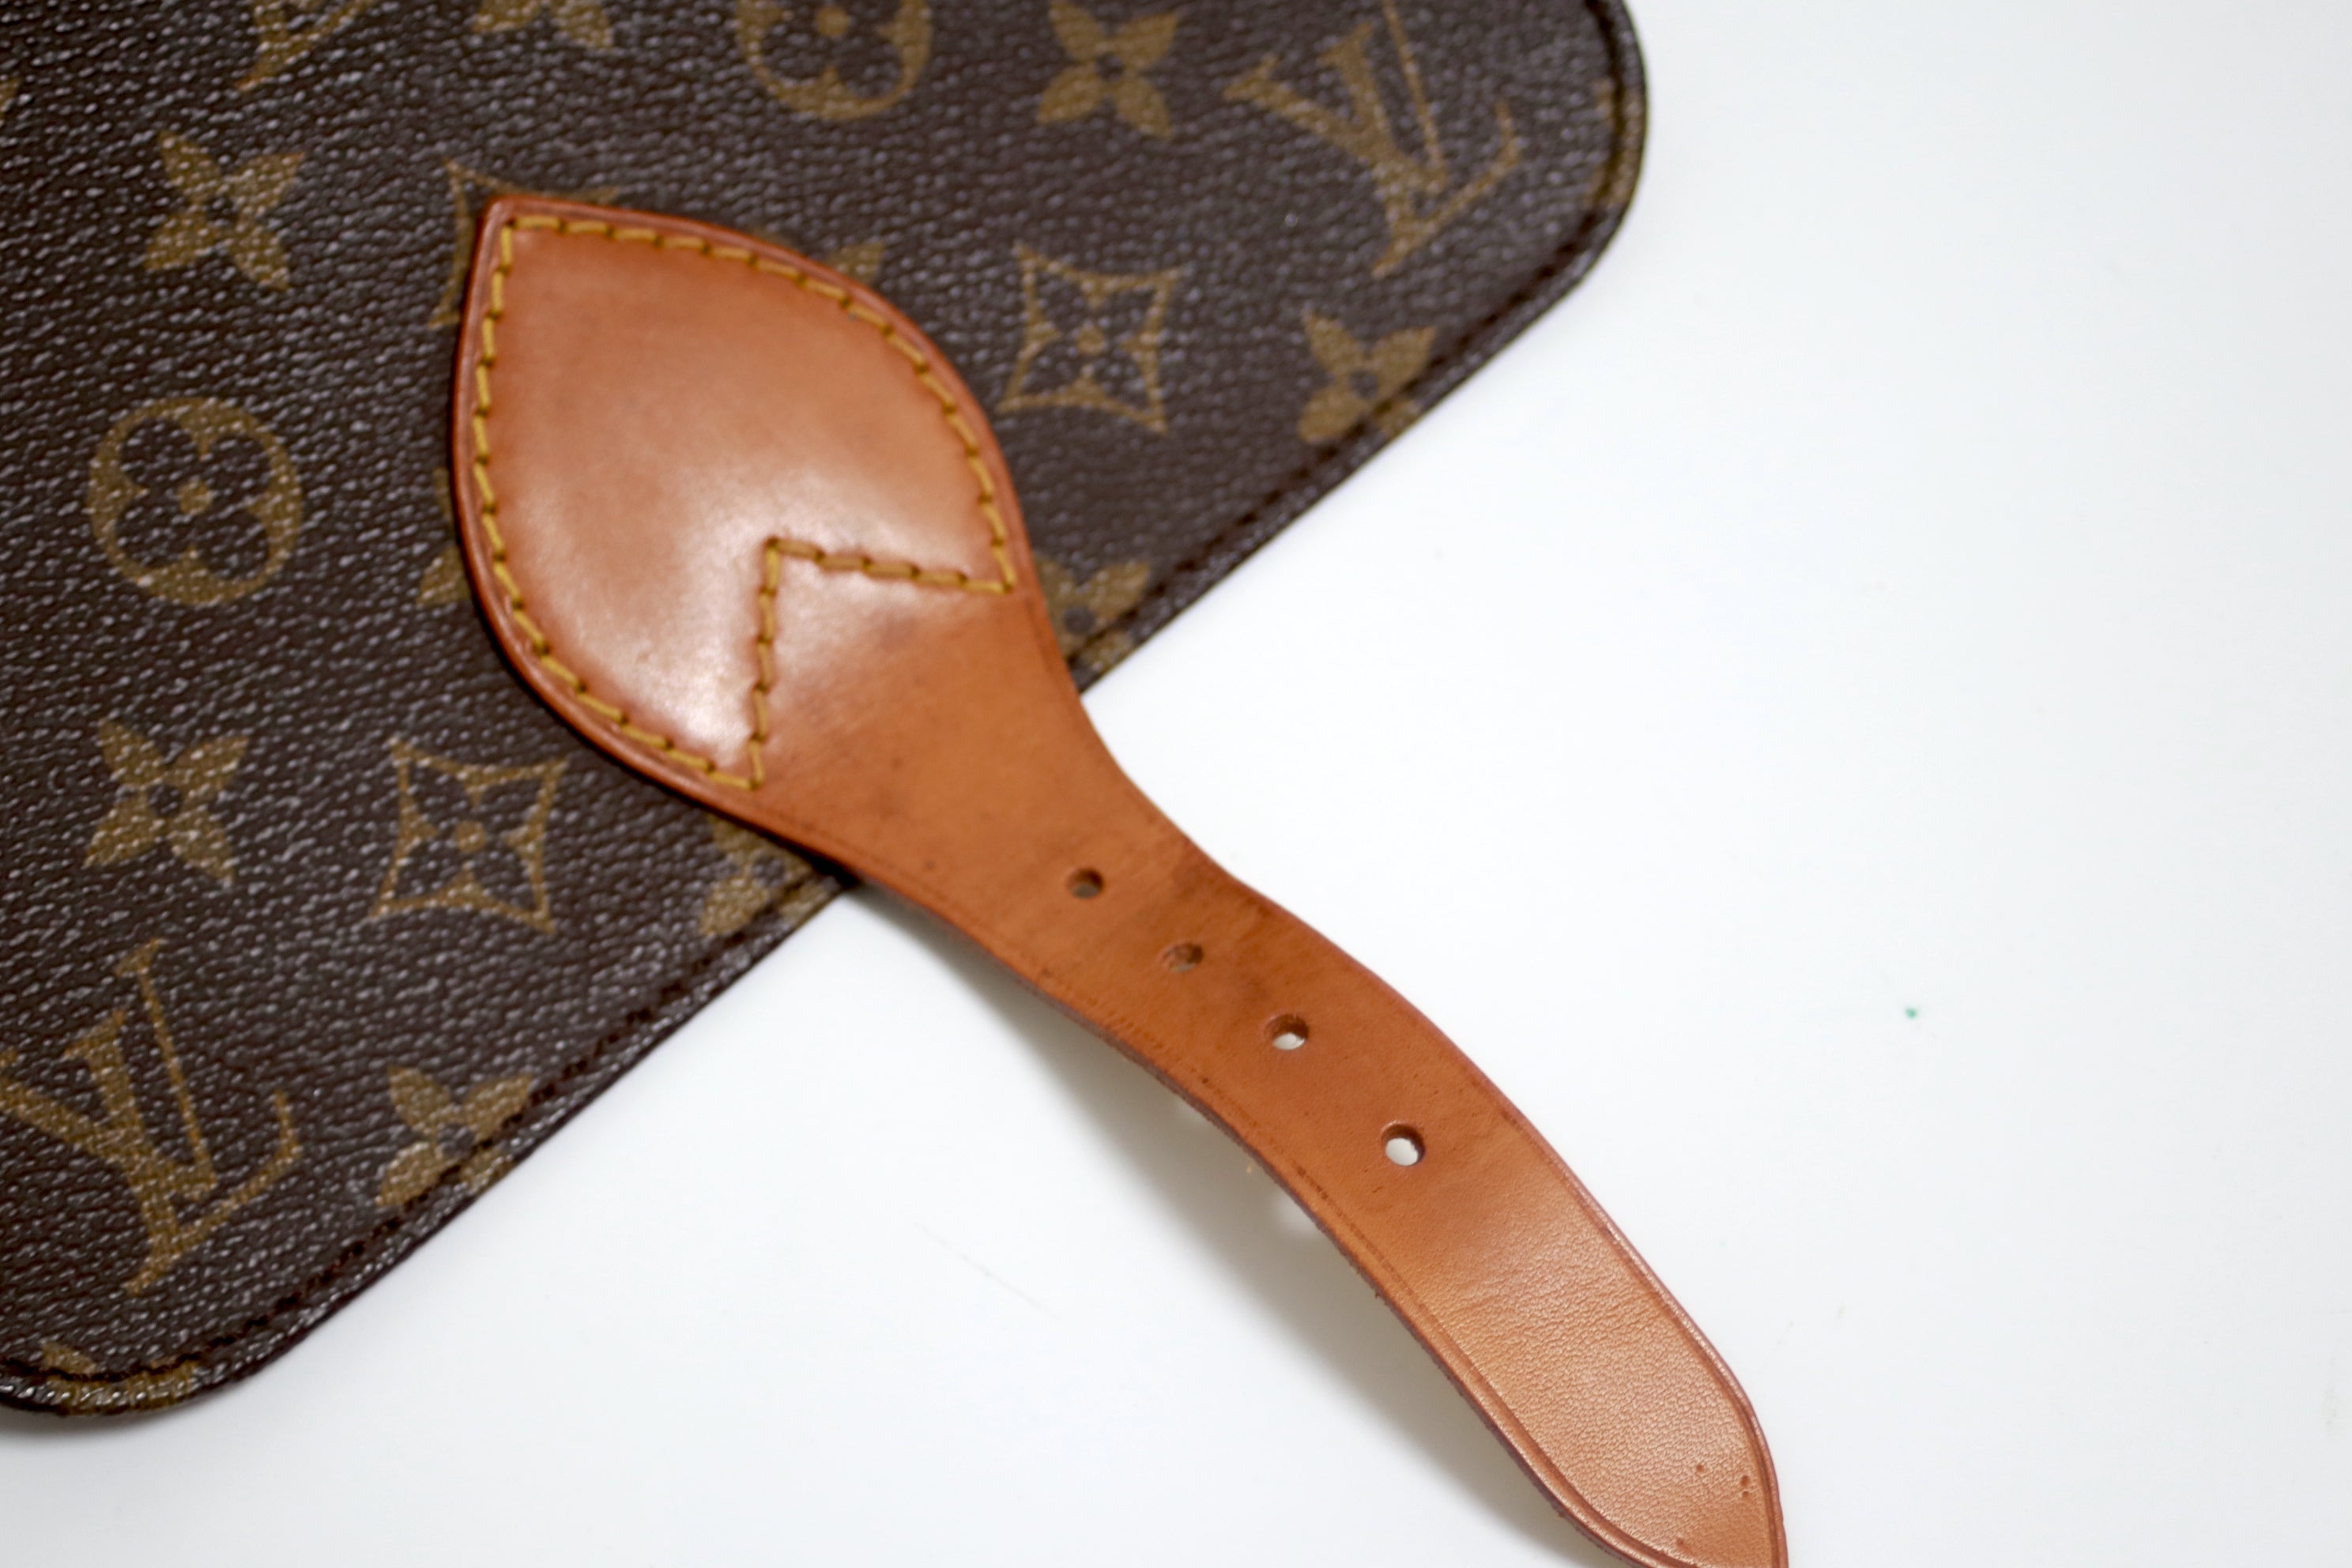 Louis Vuitton Cartouchiere MM Shoulder Bag Used (7303)